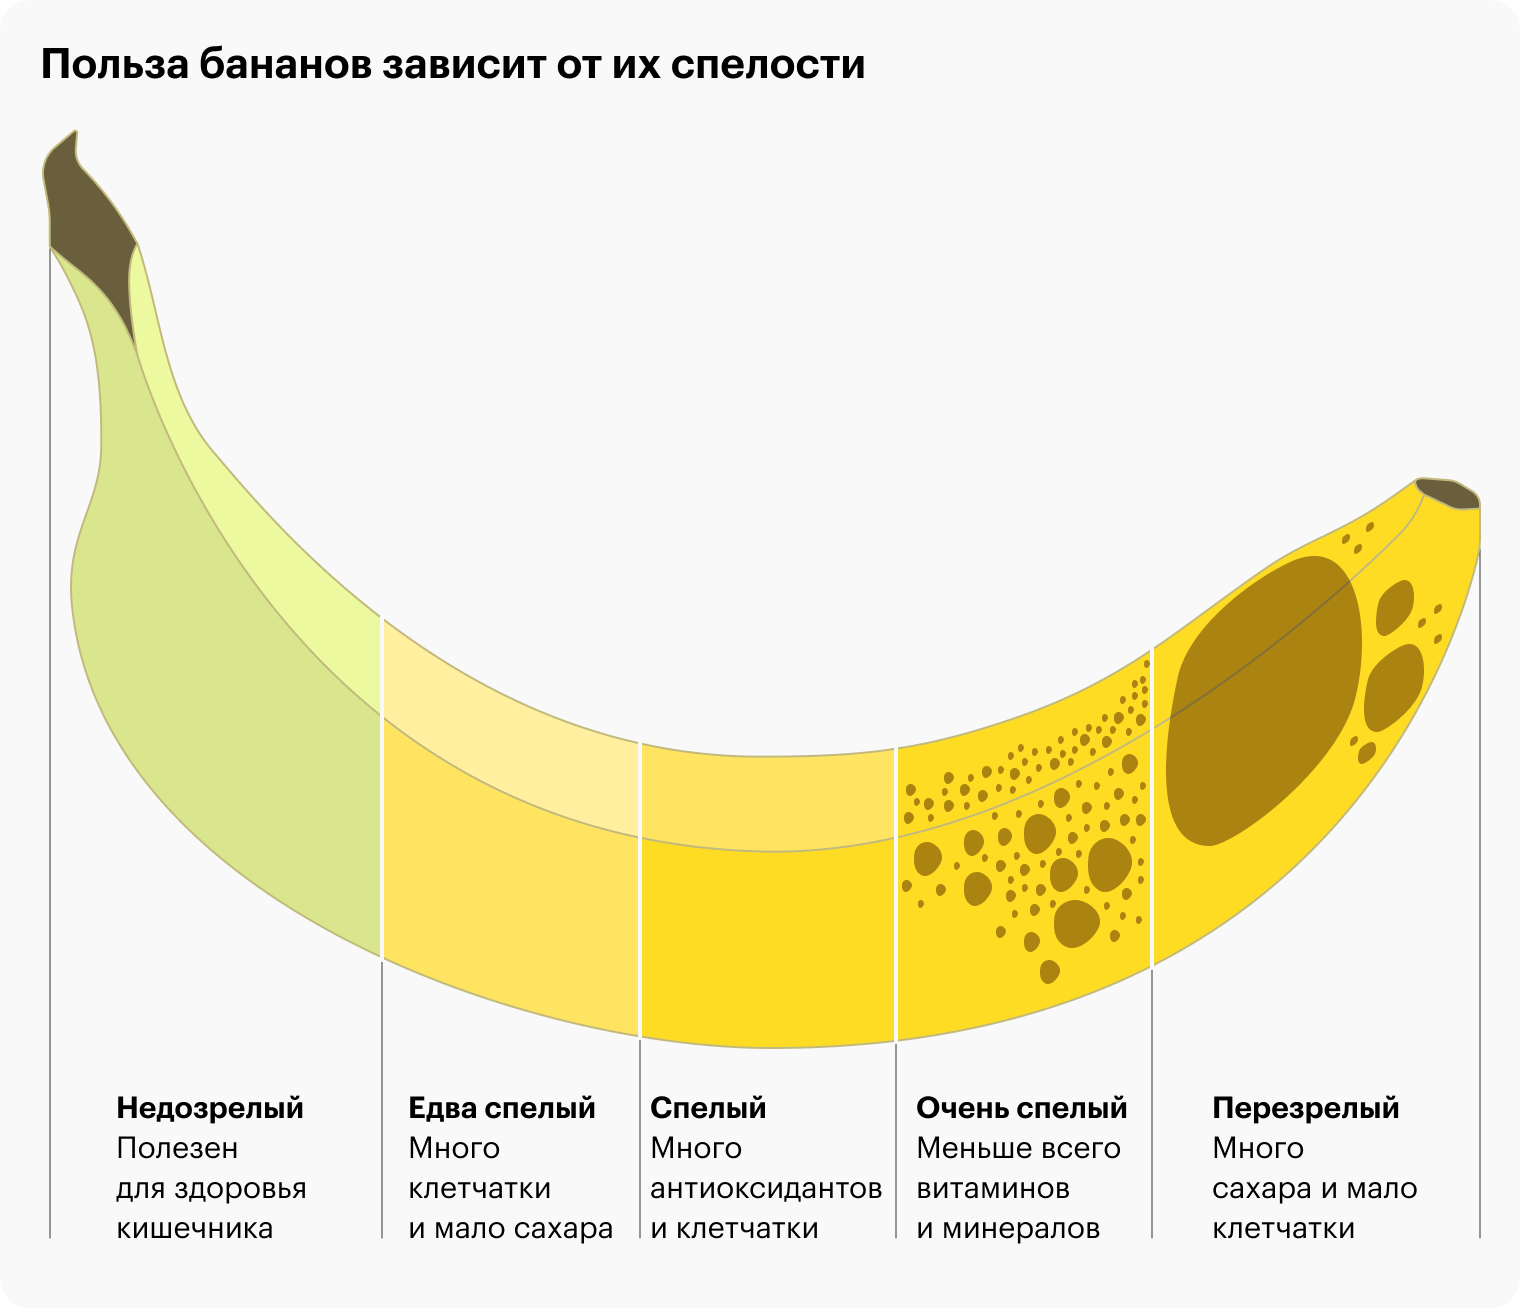 По мере созревания количество сахаров в банане увеличивается, а количество клетчатки, которая замедляет их усвоение, — снижается. Поэтому людям с сахарным диабетом второго типа стоит избегать перезрелых бананов